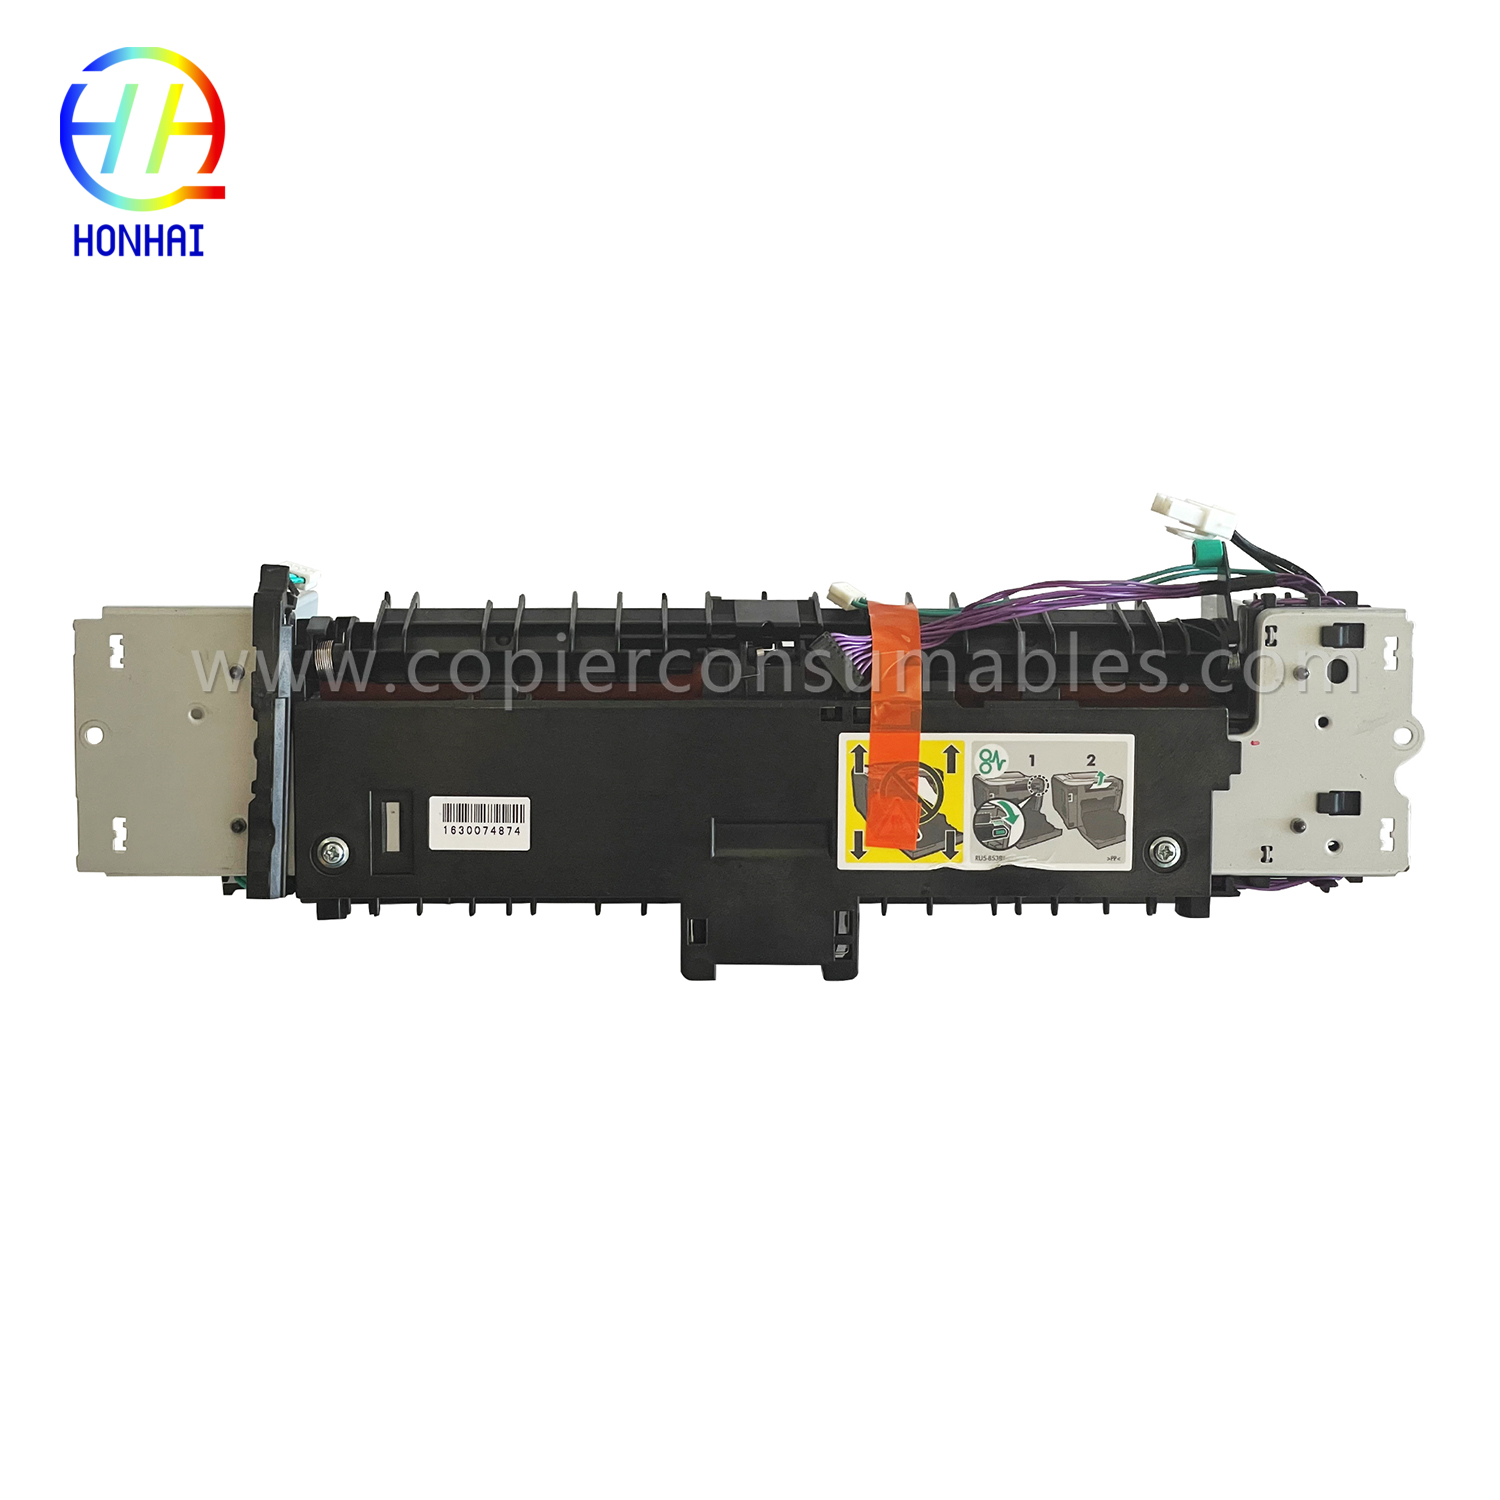 Fuser Unit for HP Laserjet PRO 400 Color Mfp M475dn M475dw RM2-5478-000